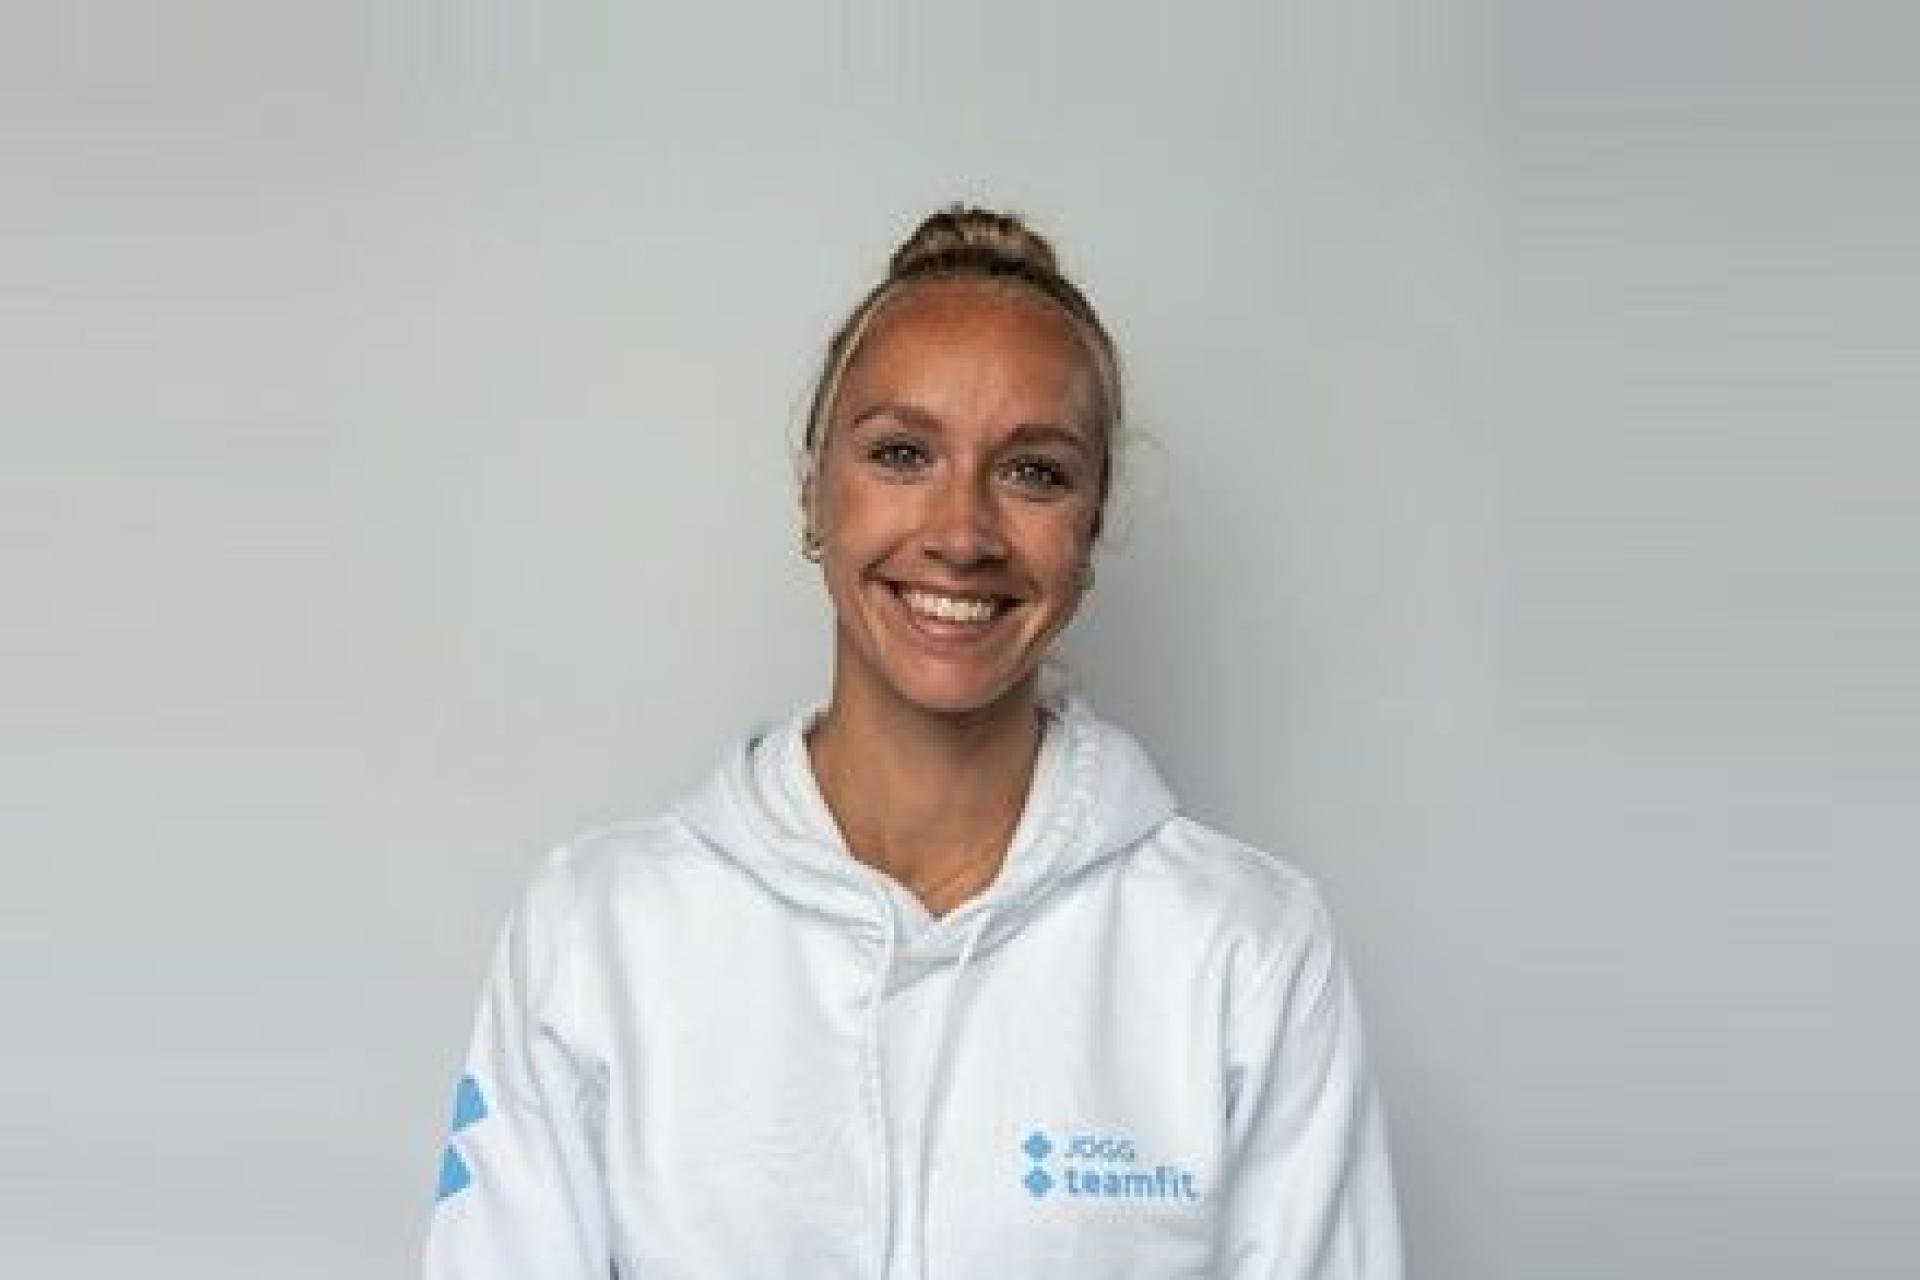 JOGG fit coach Eva van Teamfit